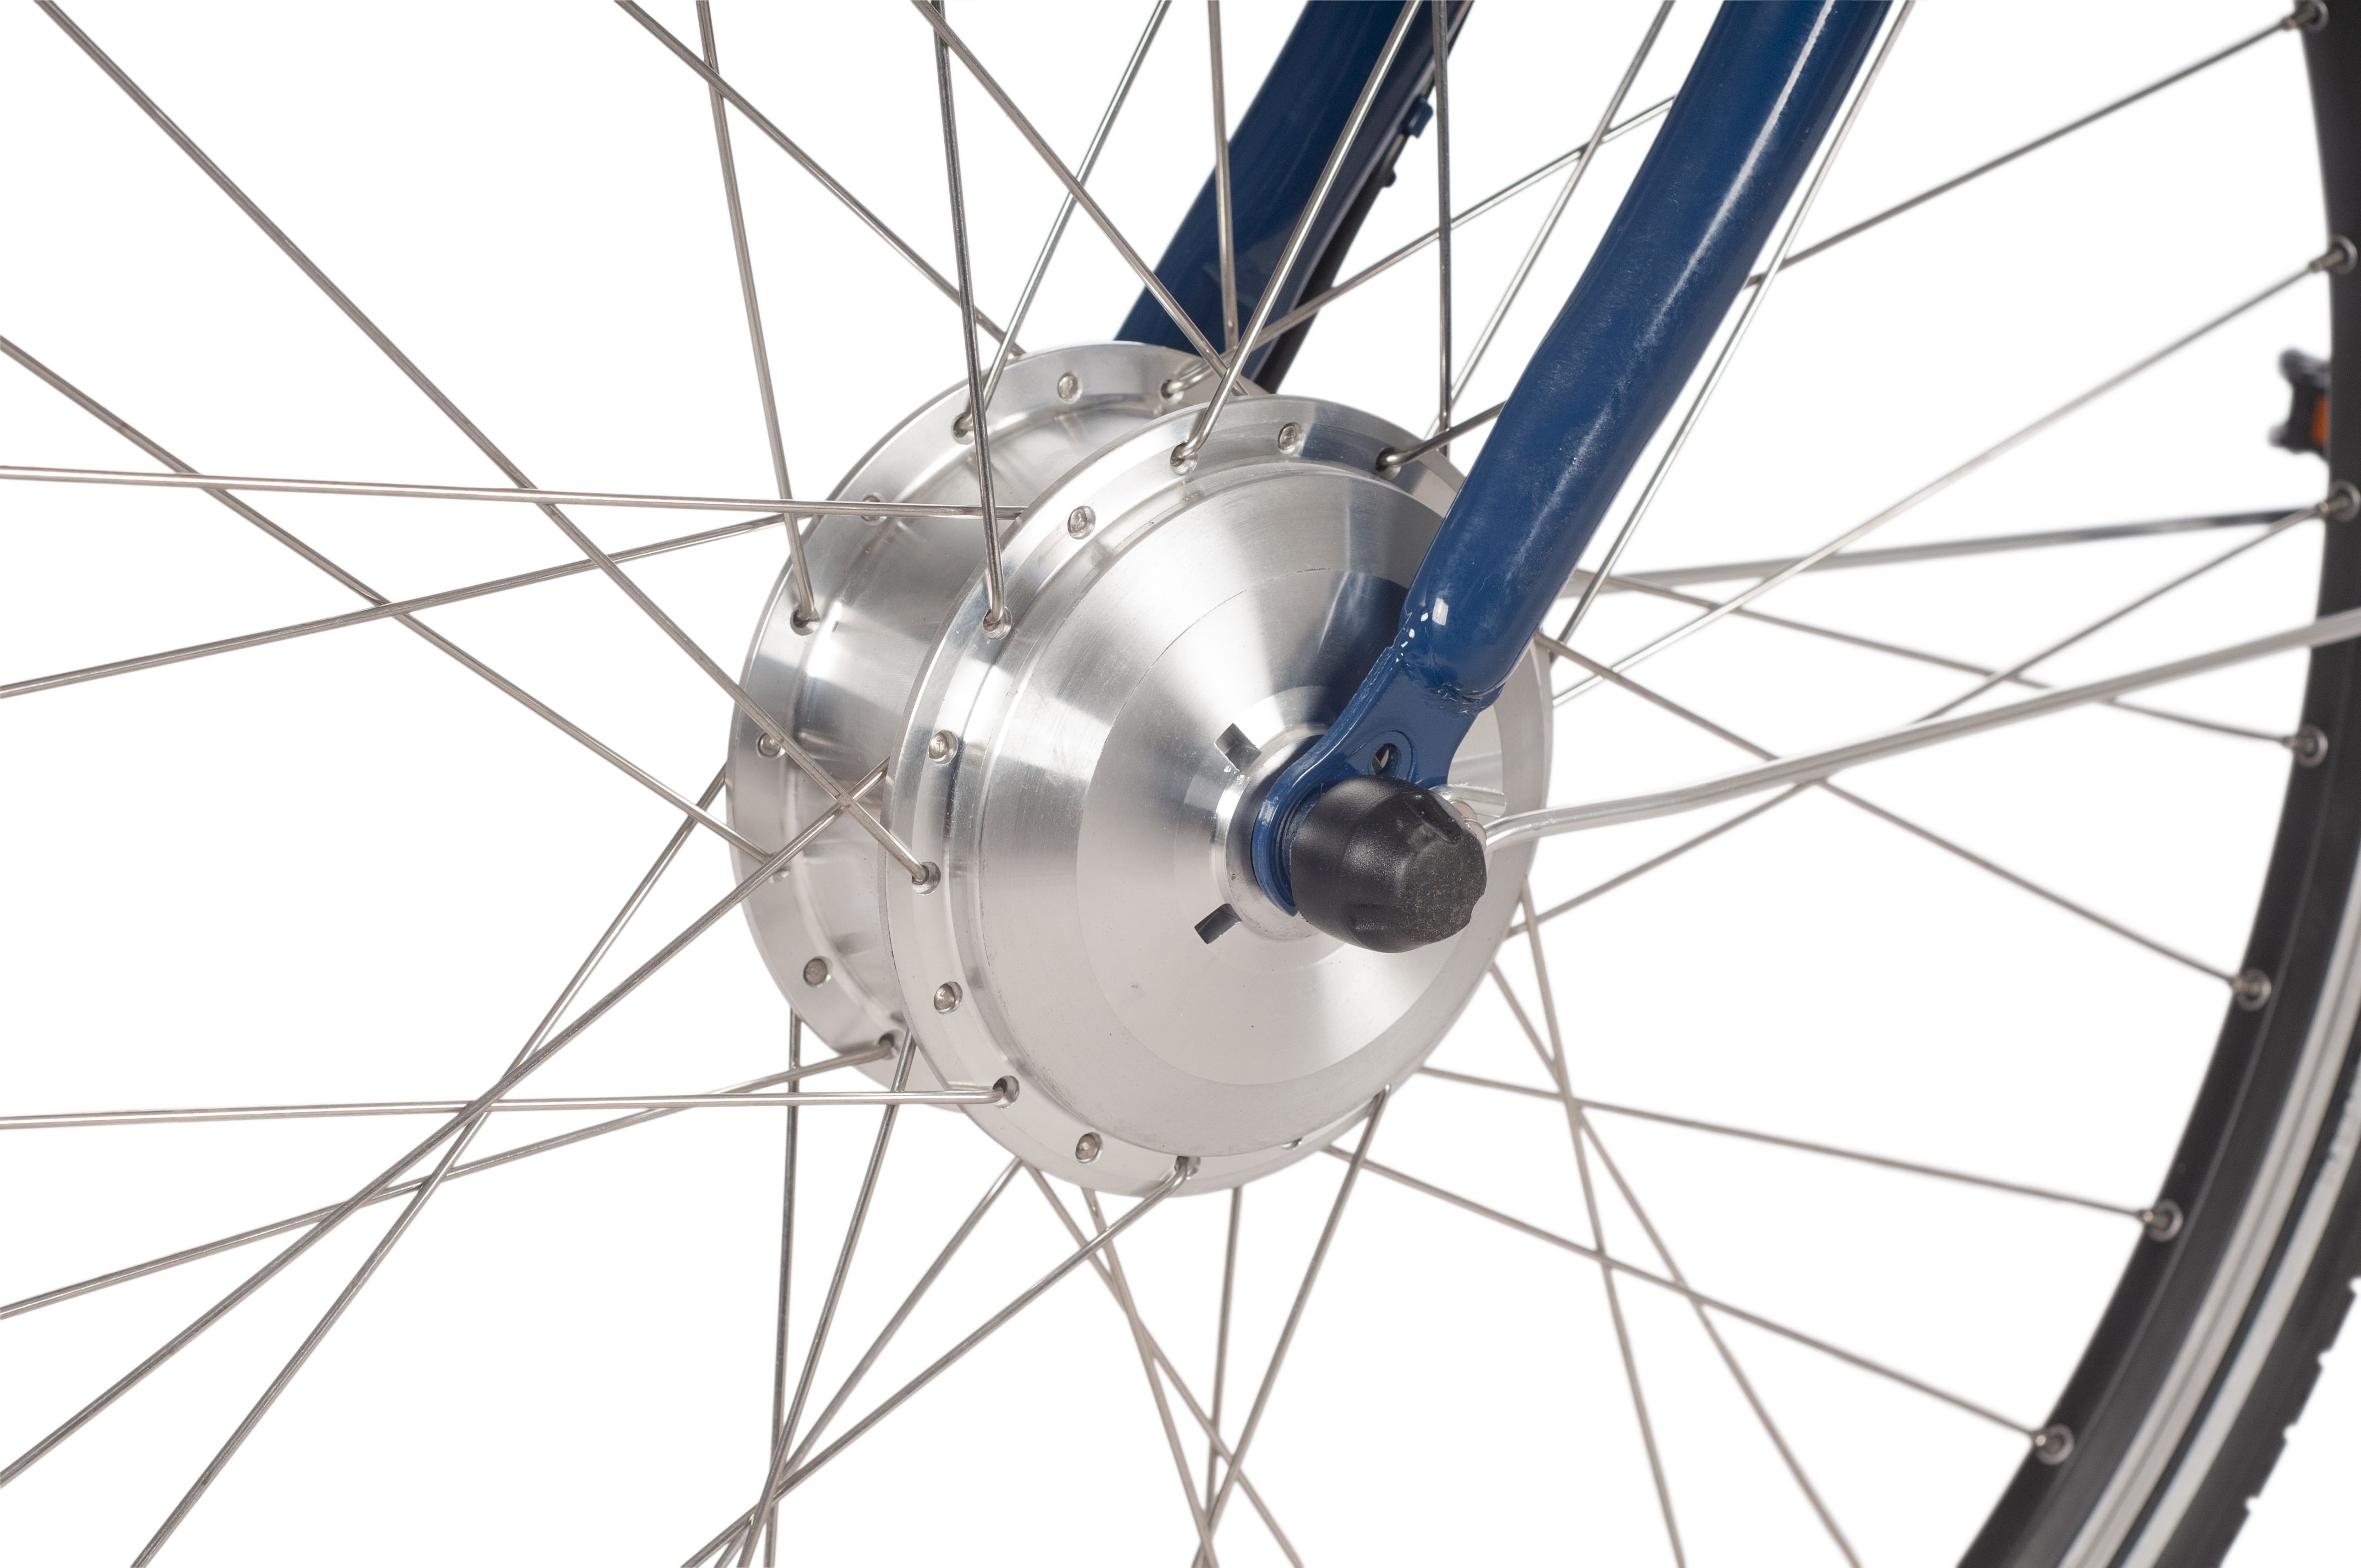 SAXONETTE Fashion Plus 2.0 E-Citybike Classic B-Ware gebraucht Rücktrittbremse Vorderradmotor 7 Gang Wave nachtblau glänzend